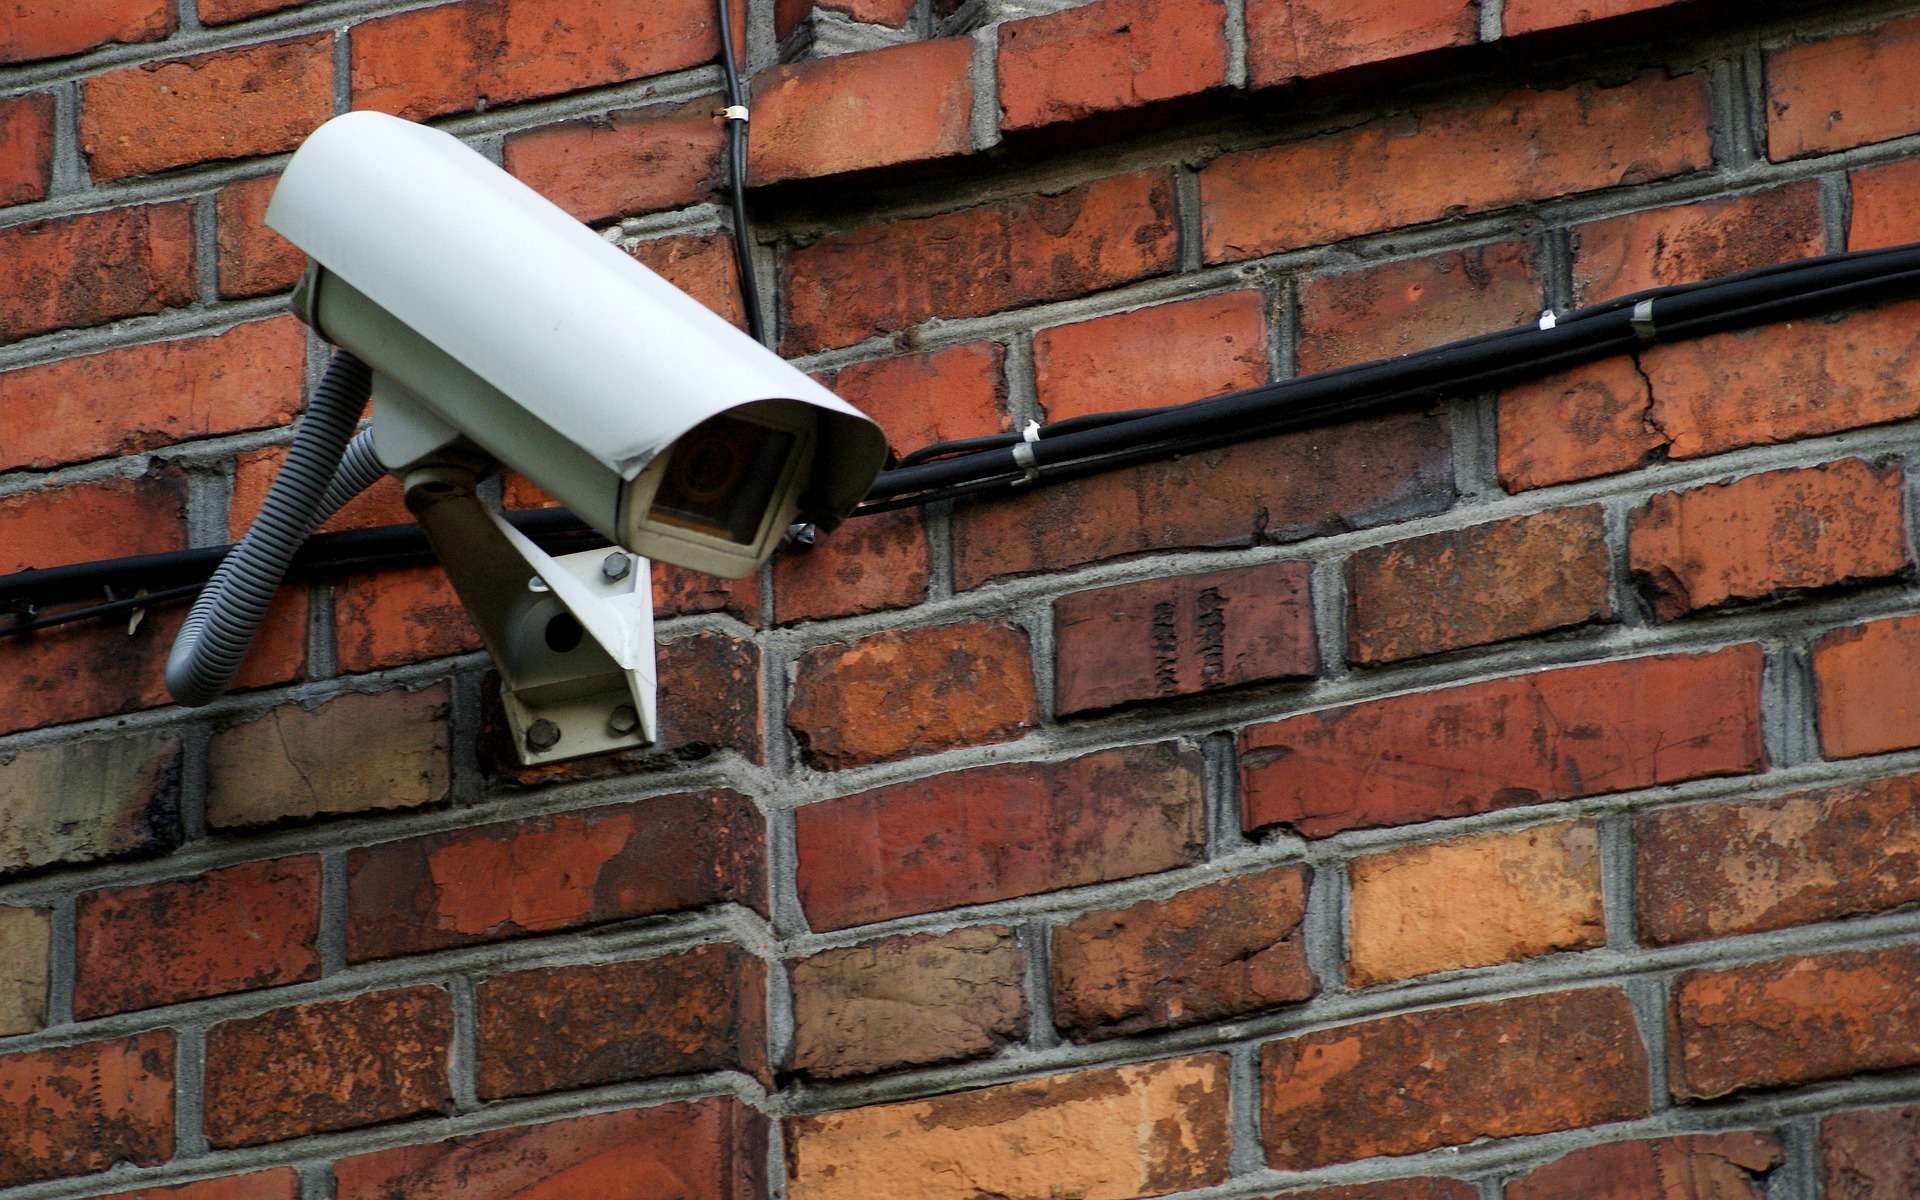 ▷ Normativa sobre cámaras de vigilancia Empresas (Ley 2024)